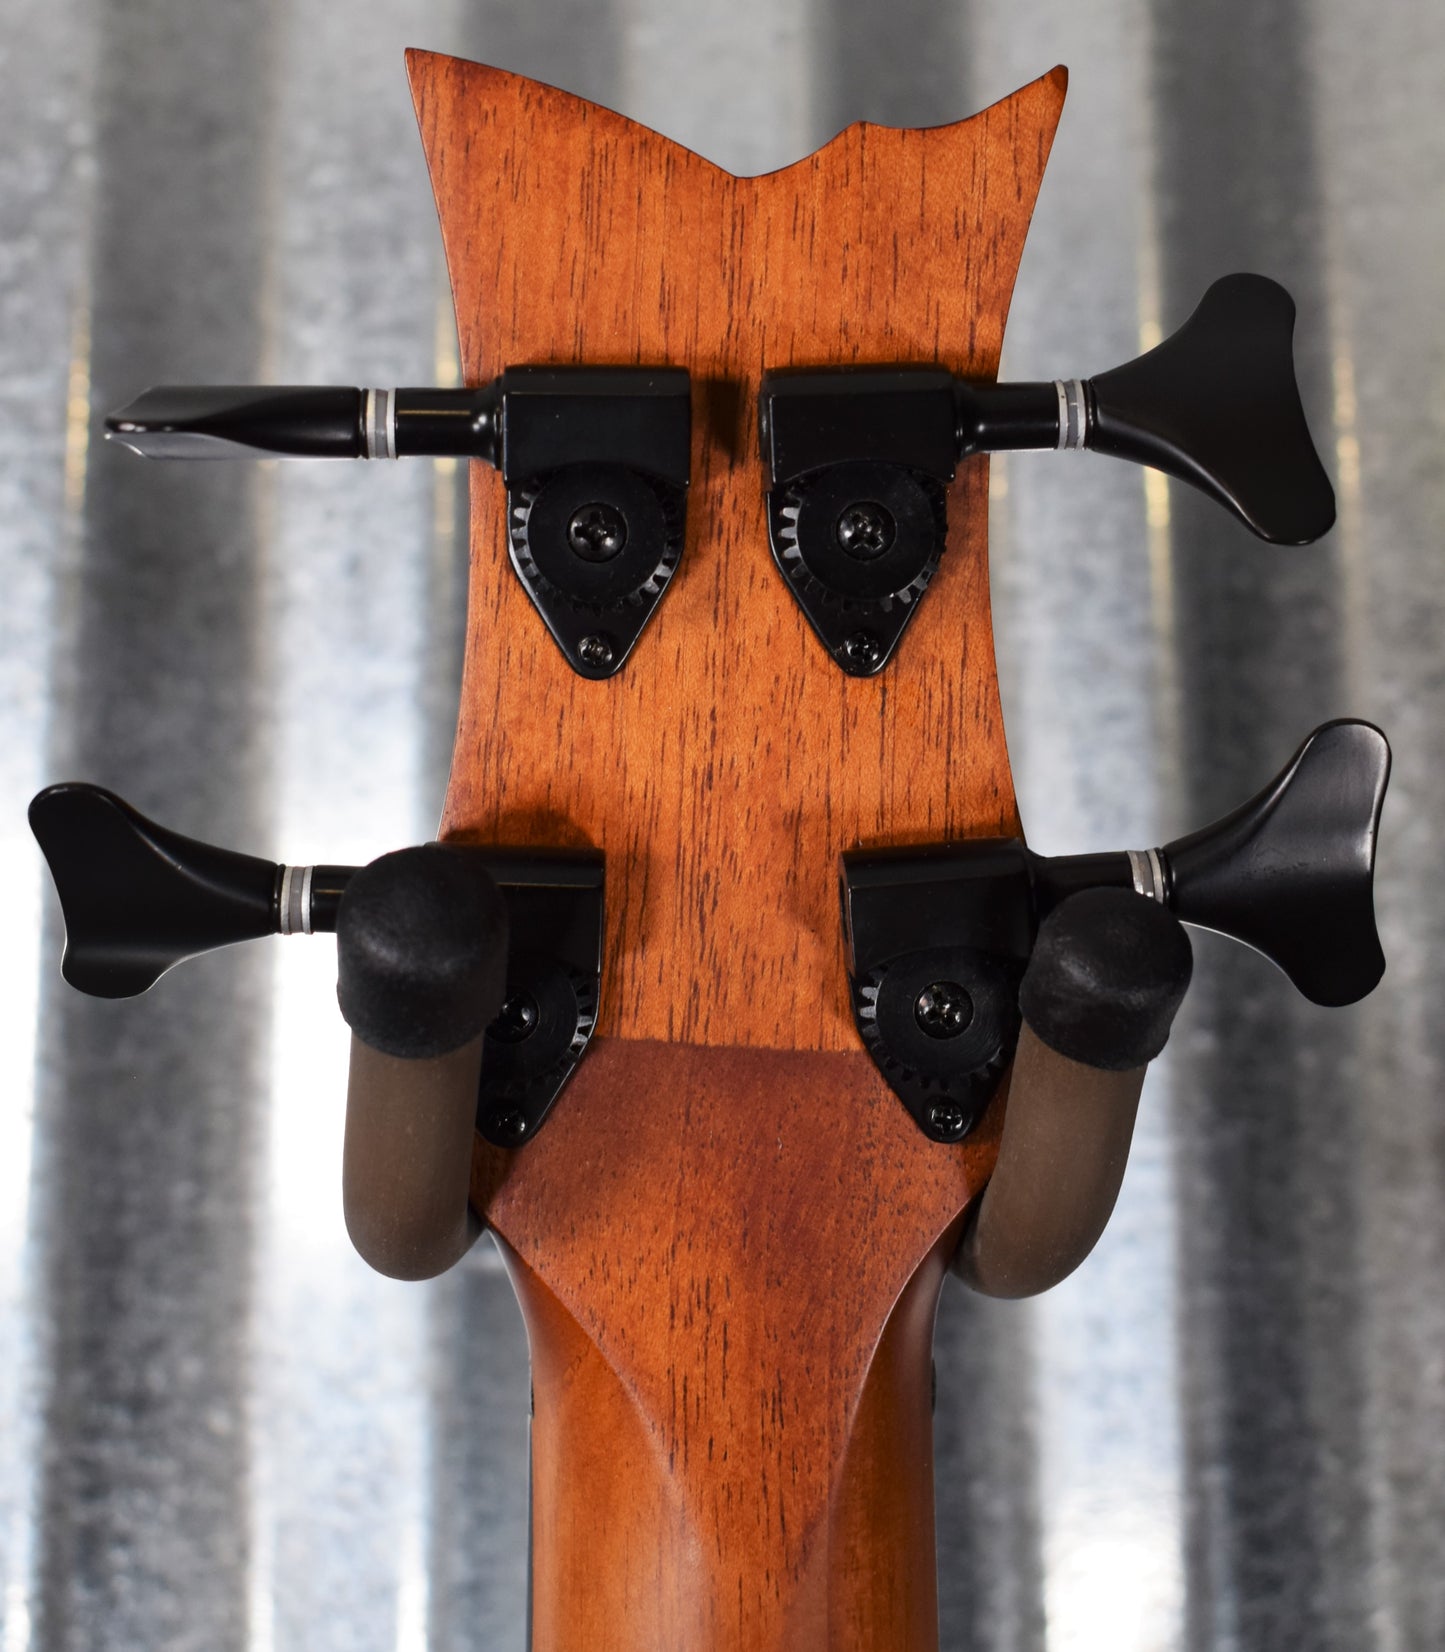 Ortega Guitars Pawel Maciwoda PM-SHAMAN Fretless Ukulele Uke U Bass & Bag #6891 Used